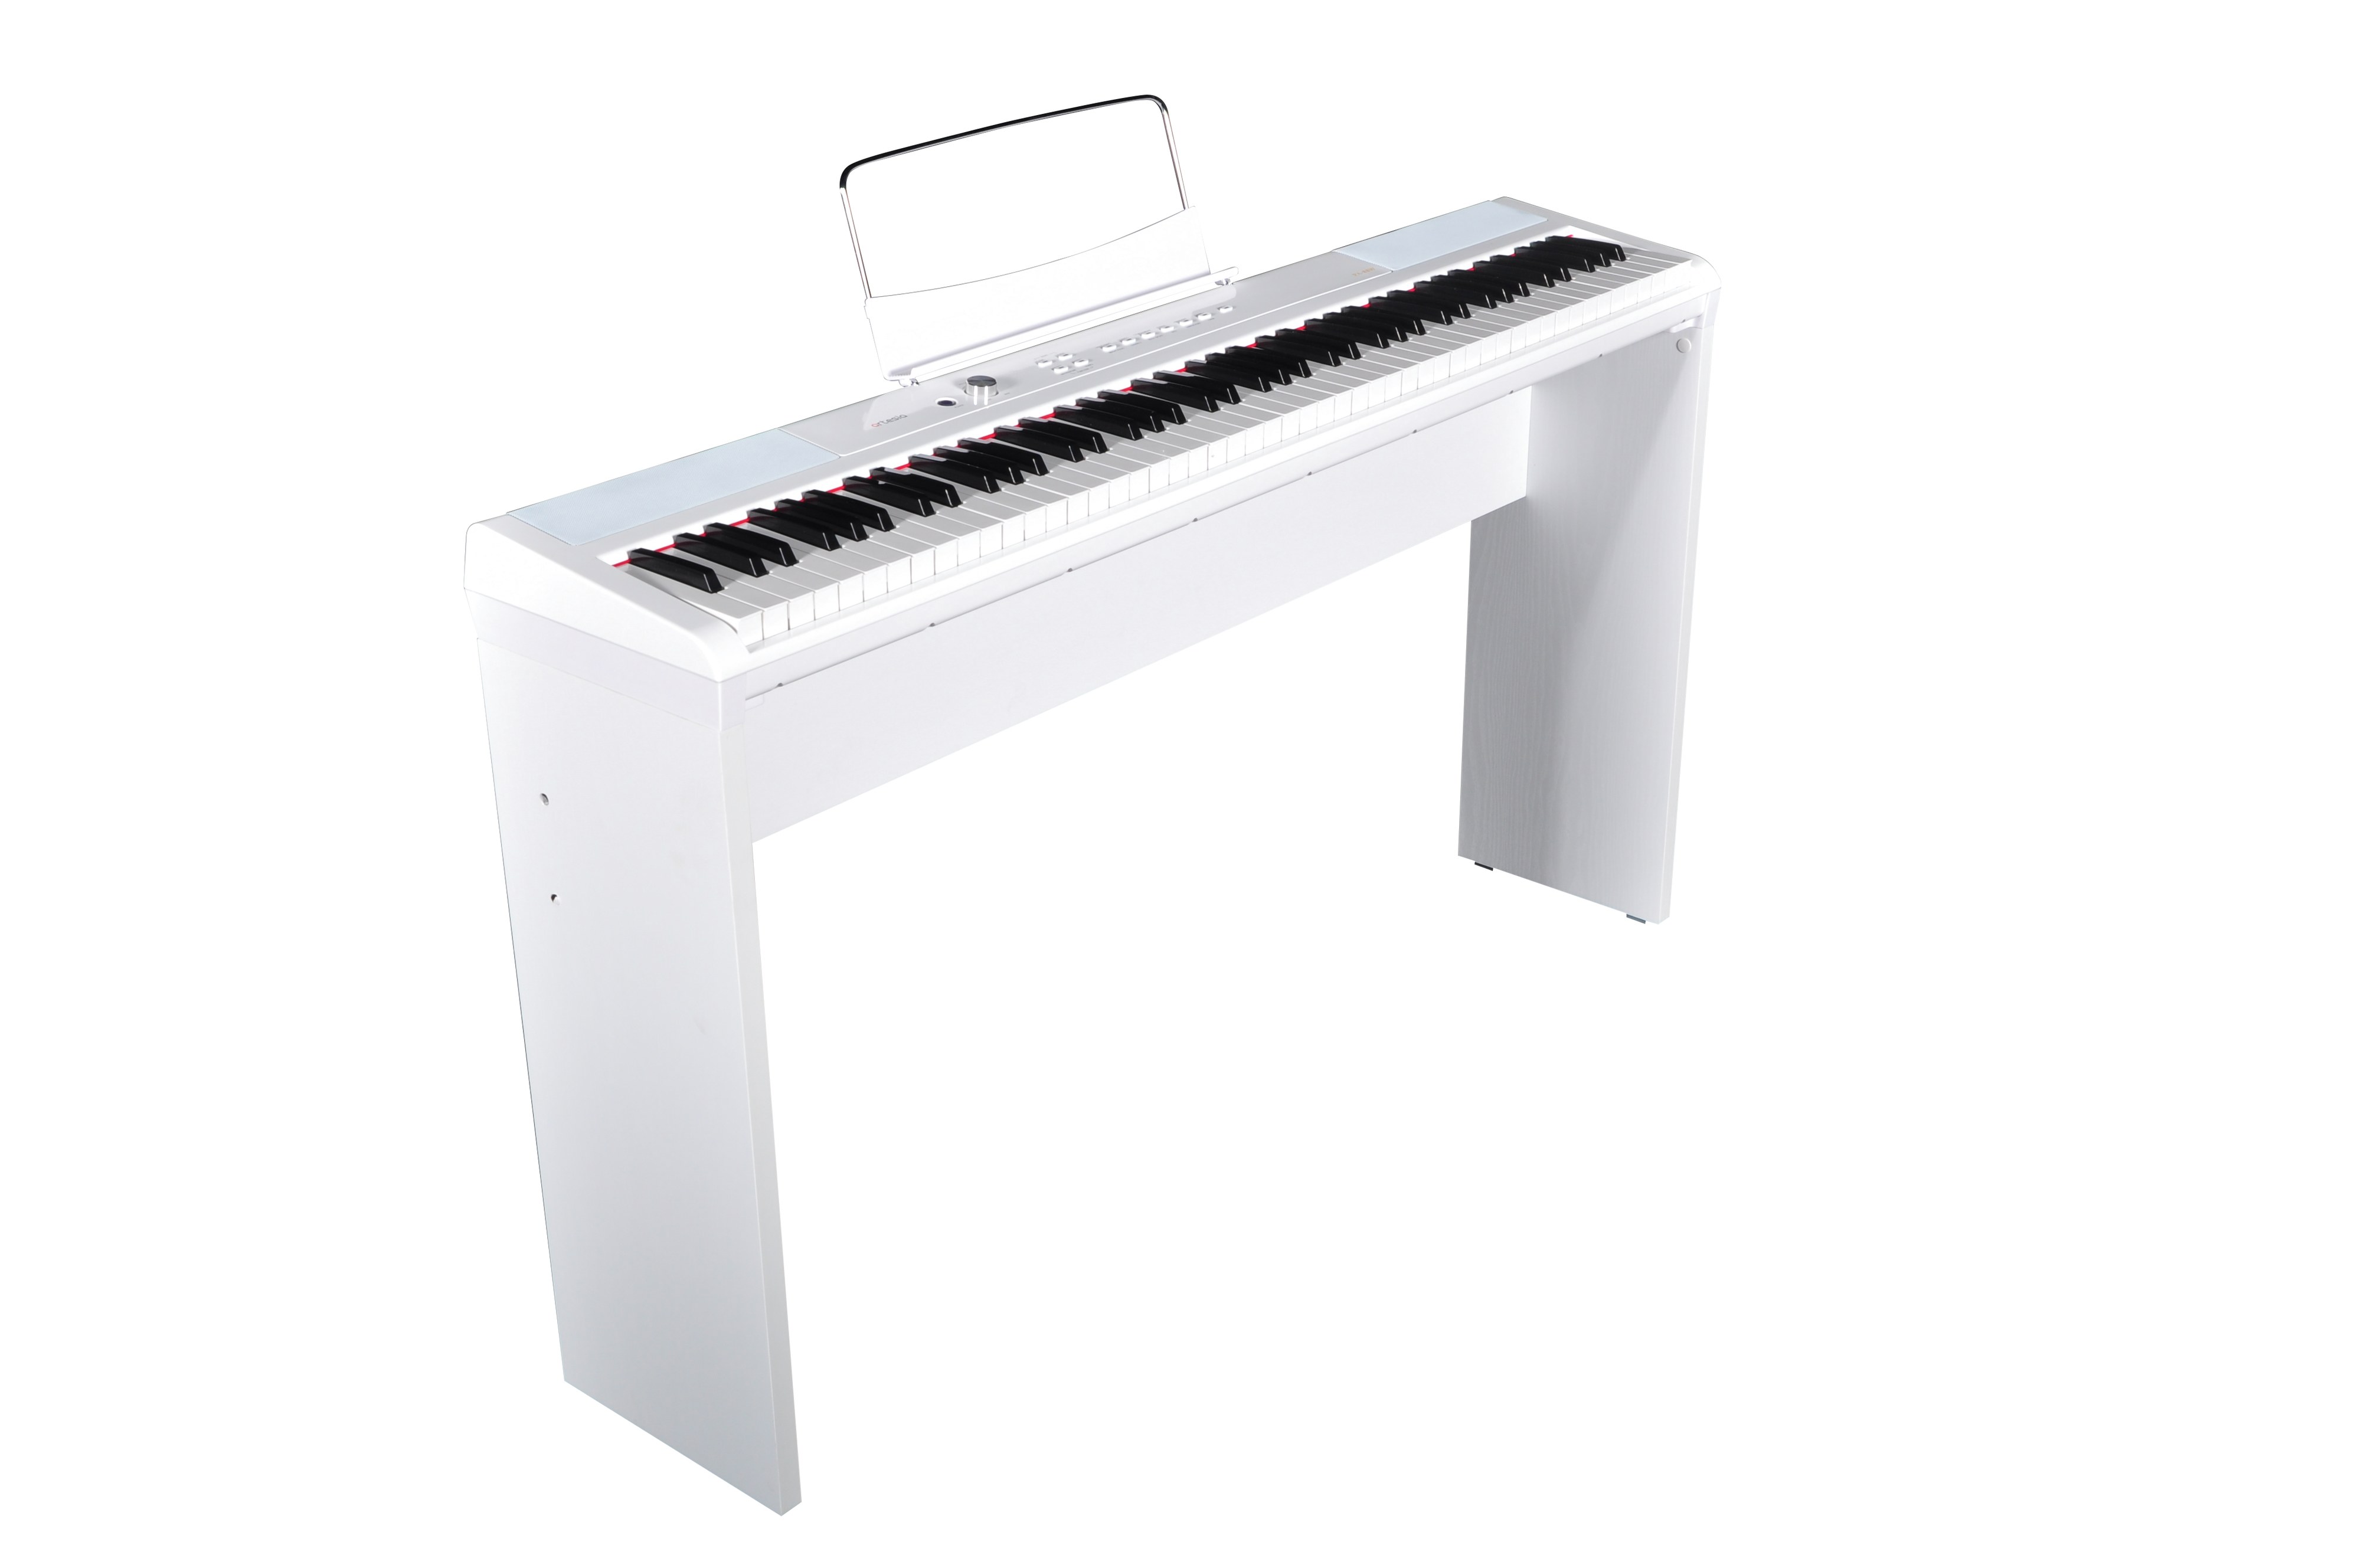 Billede af Artesia Performer Digital Piano pakke - Hvid med ben hos Music2you